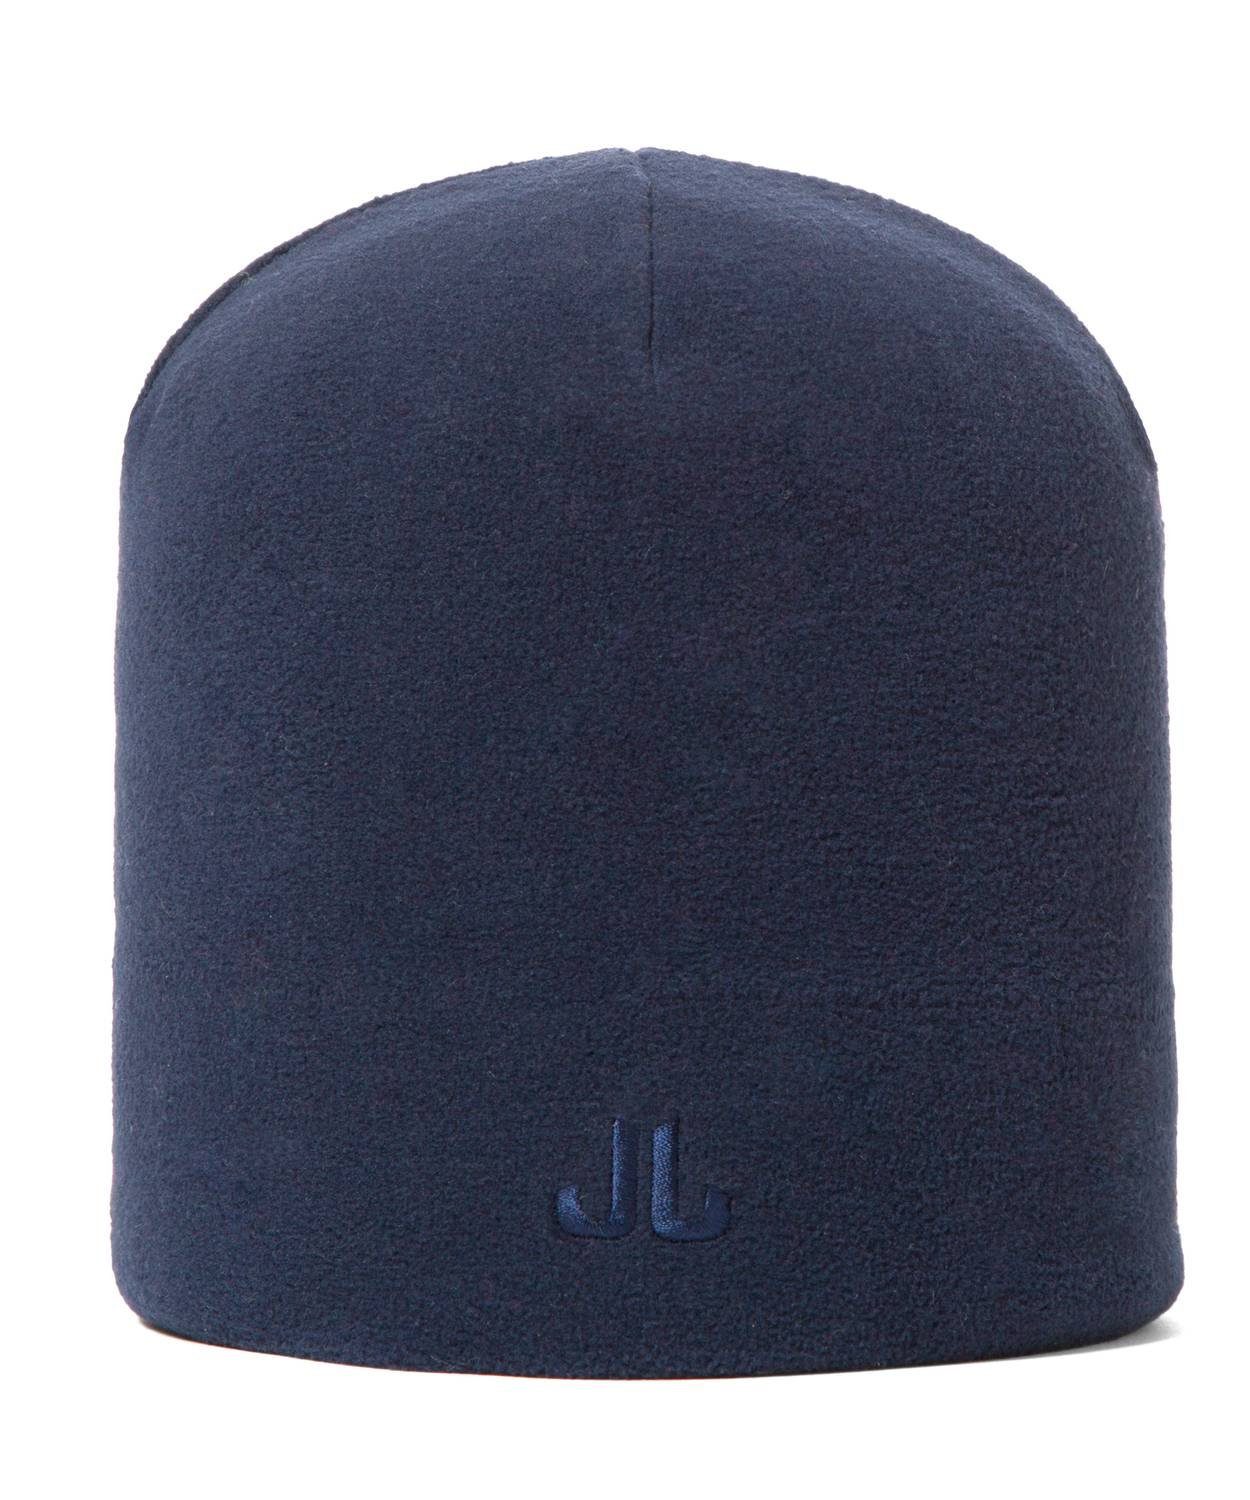 Jail Jam Strickmütze Unisex Mütze aus Microfleece, doppellagiger Bund Blue Navy